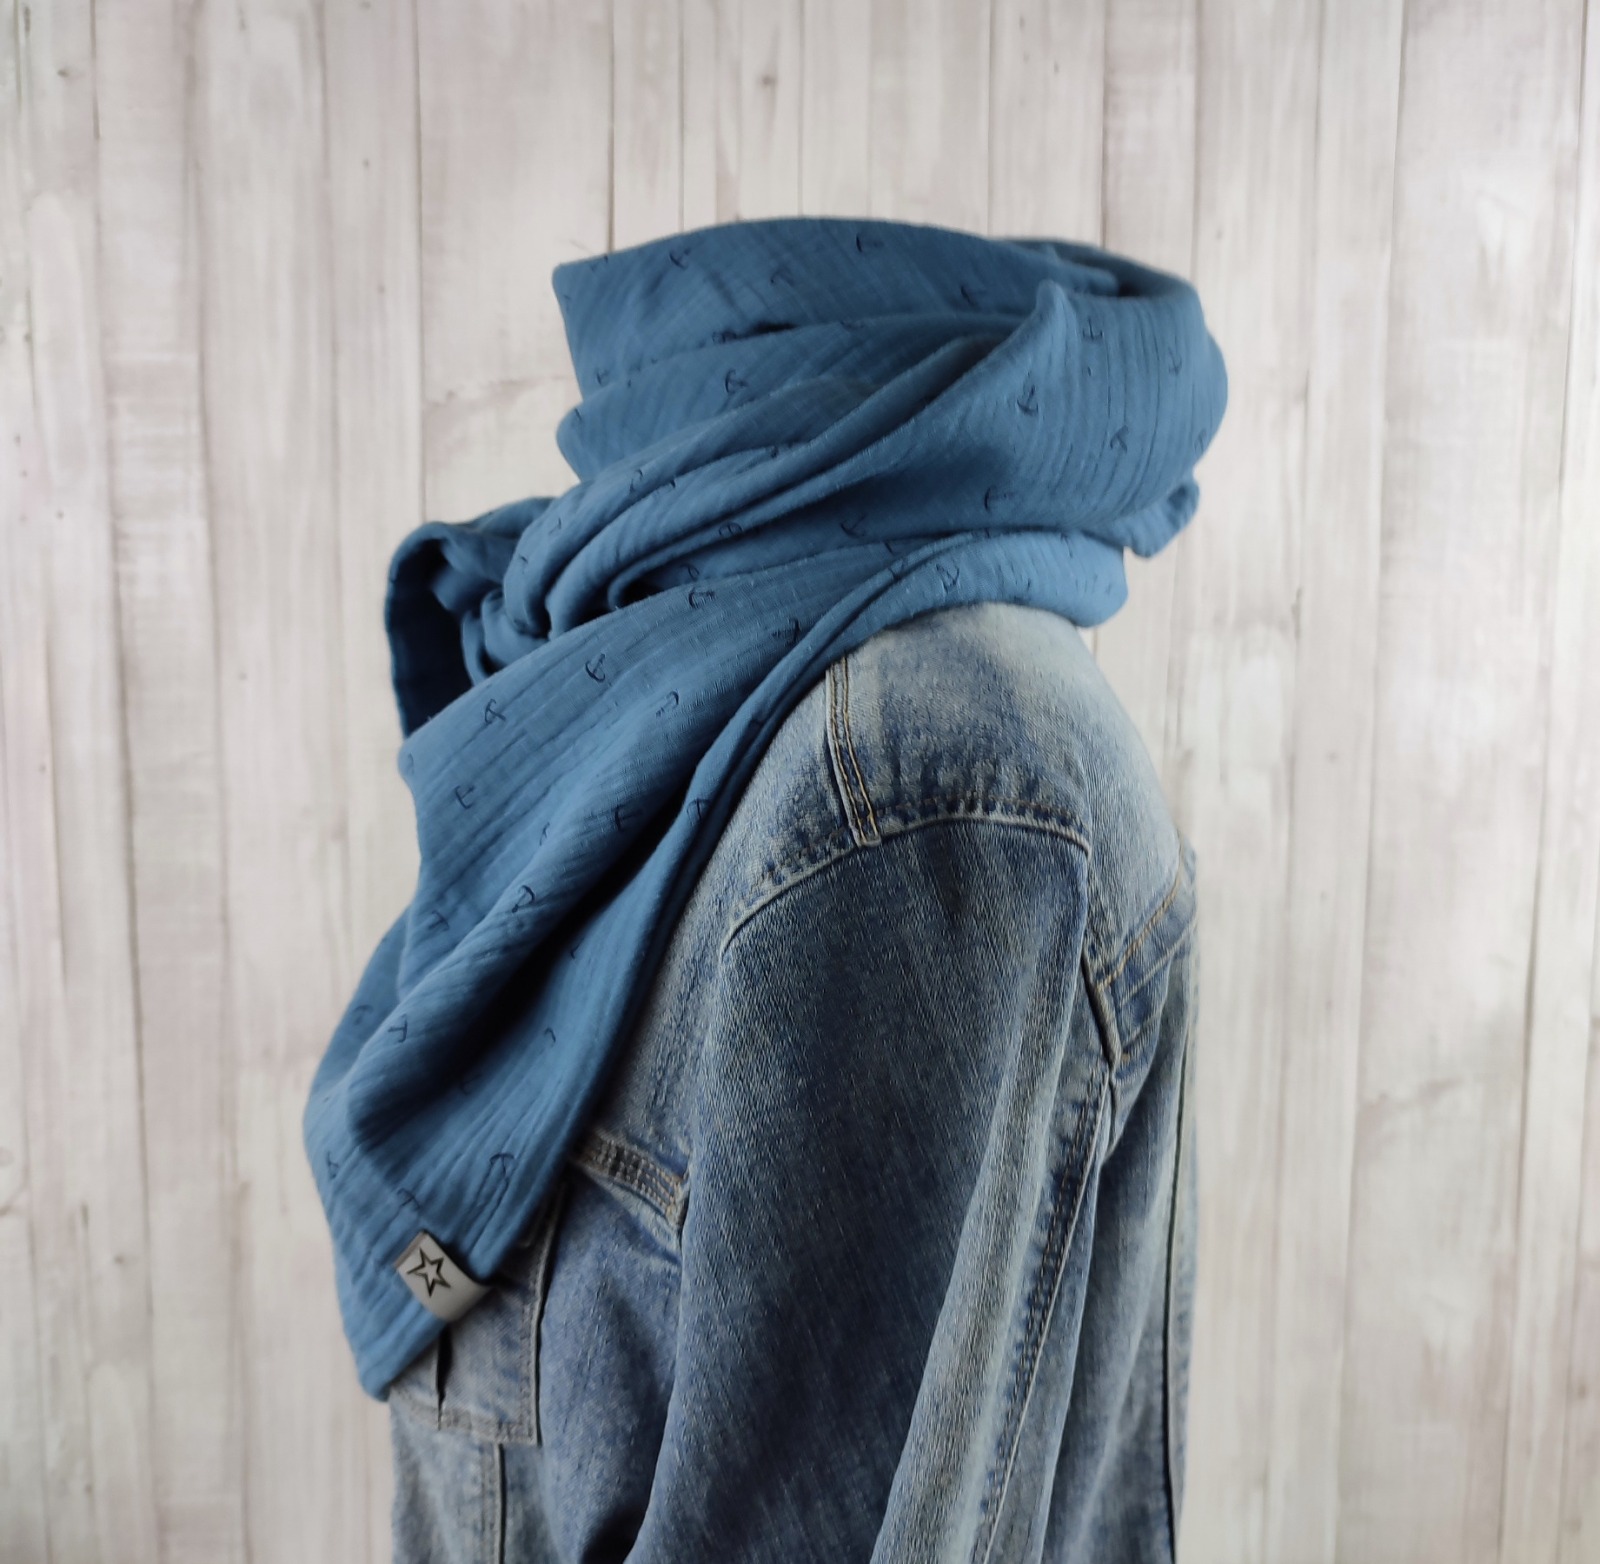 Tuch Anker - Dreieckstuch Musselin Damen - Schal jeansblau mit Ankern in dunkelblau - XXL Tuch aus Baumwolle - Mamatuch 5